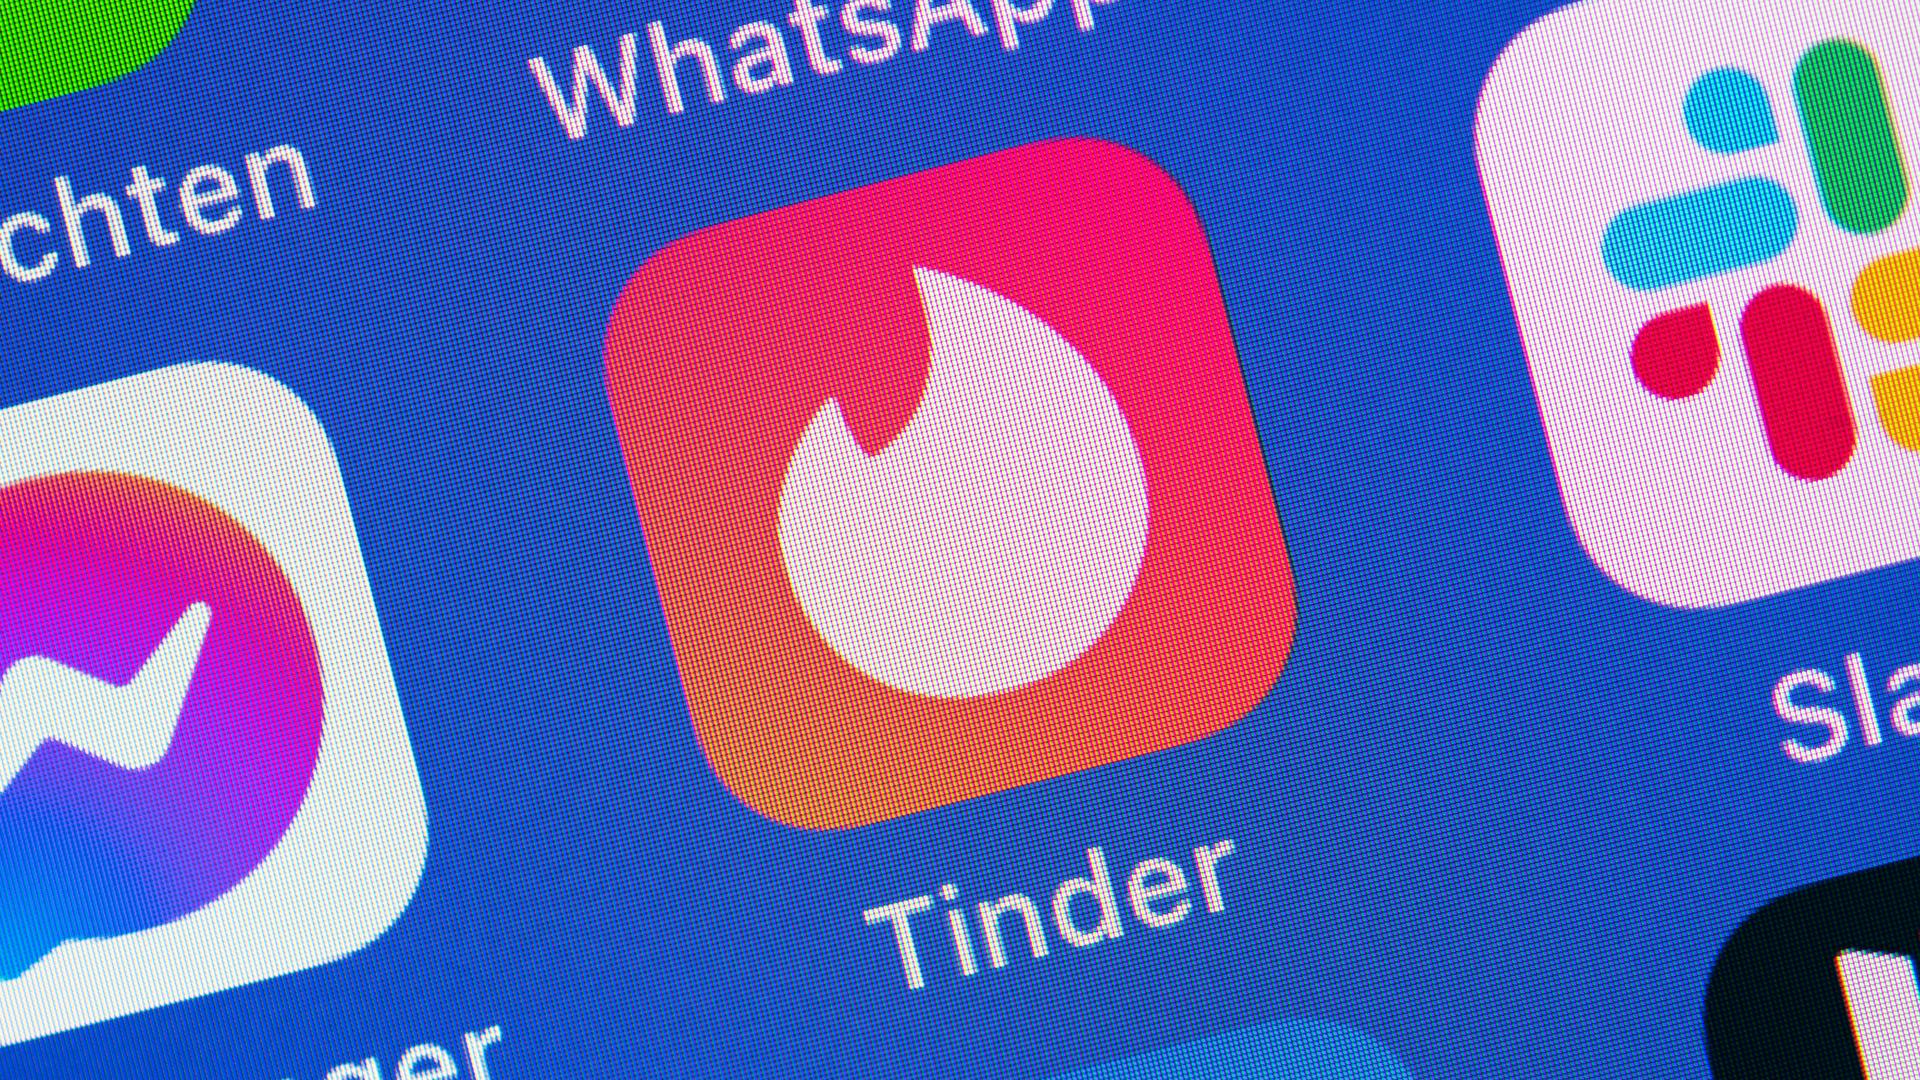 Ein App-Icon der App Tinder auf dem Smartphone.